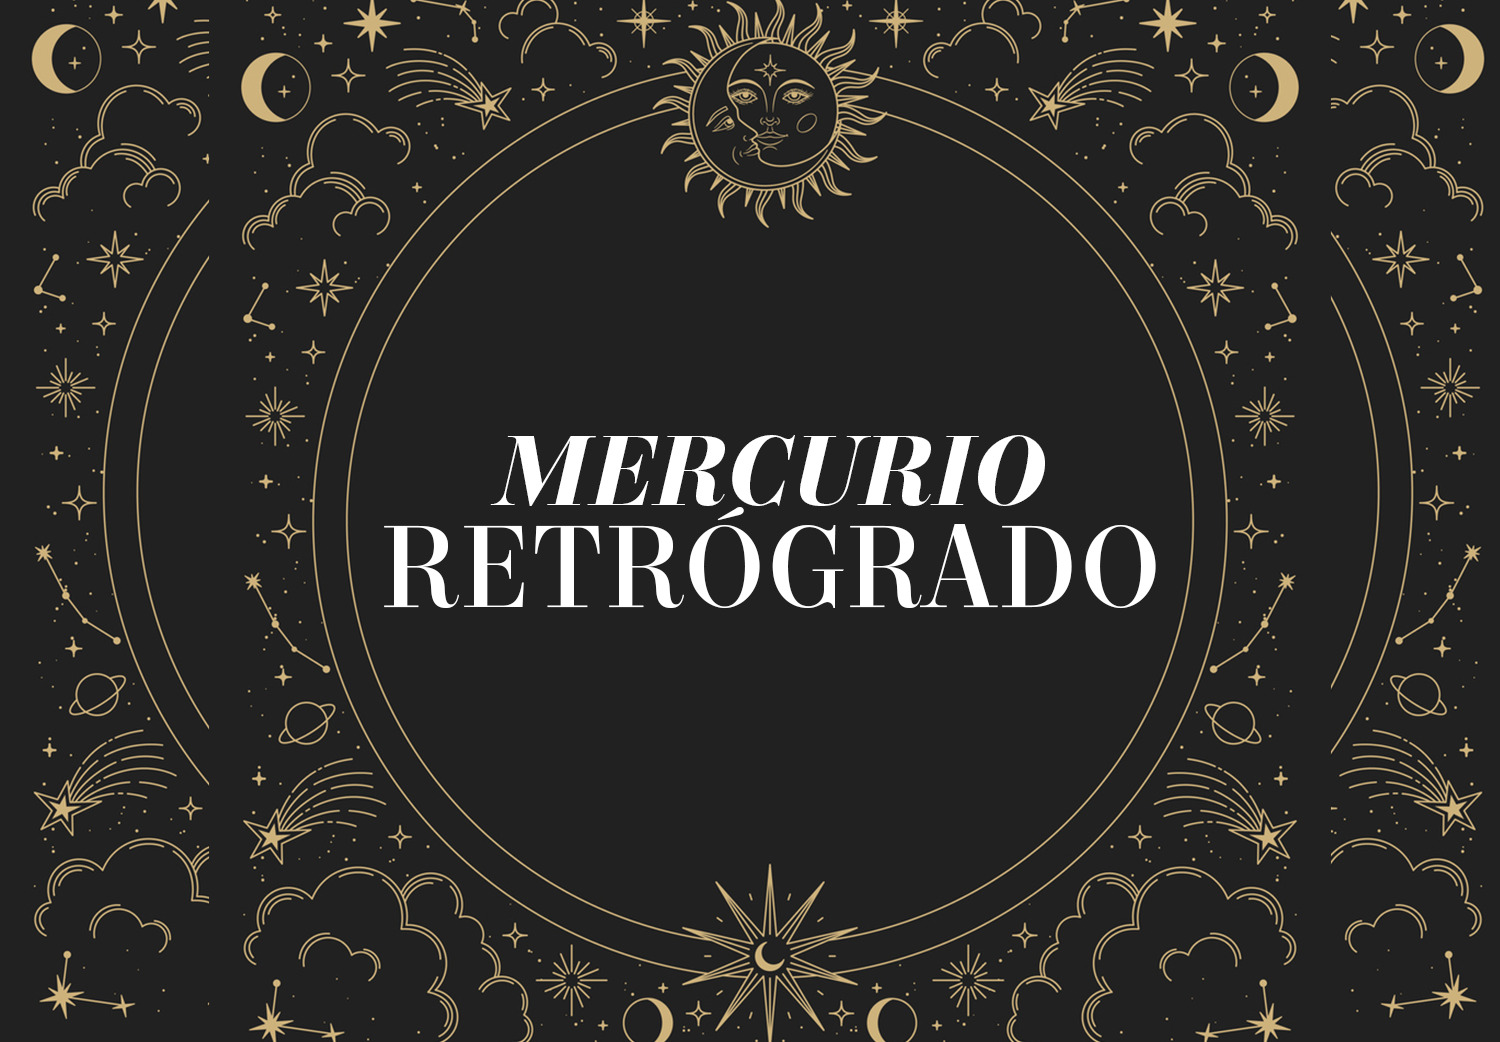 MERCURIO RETRÓGRADO